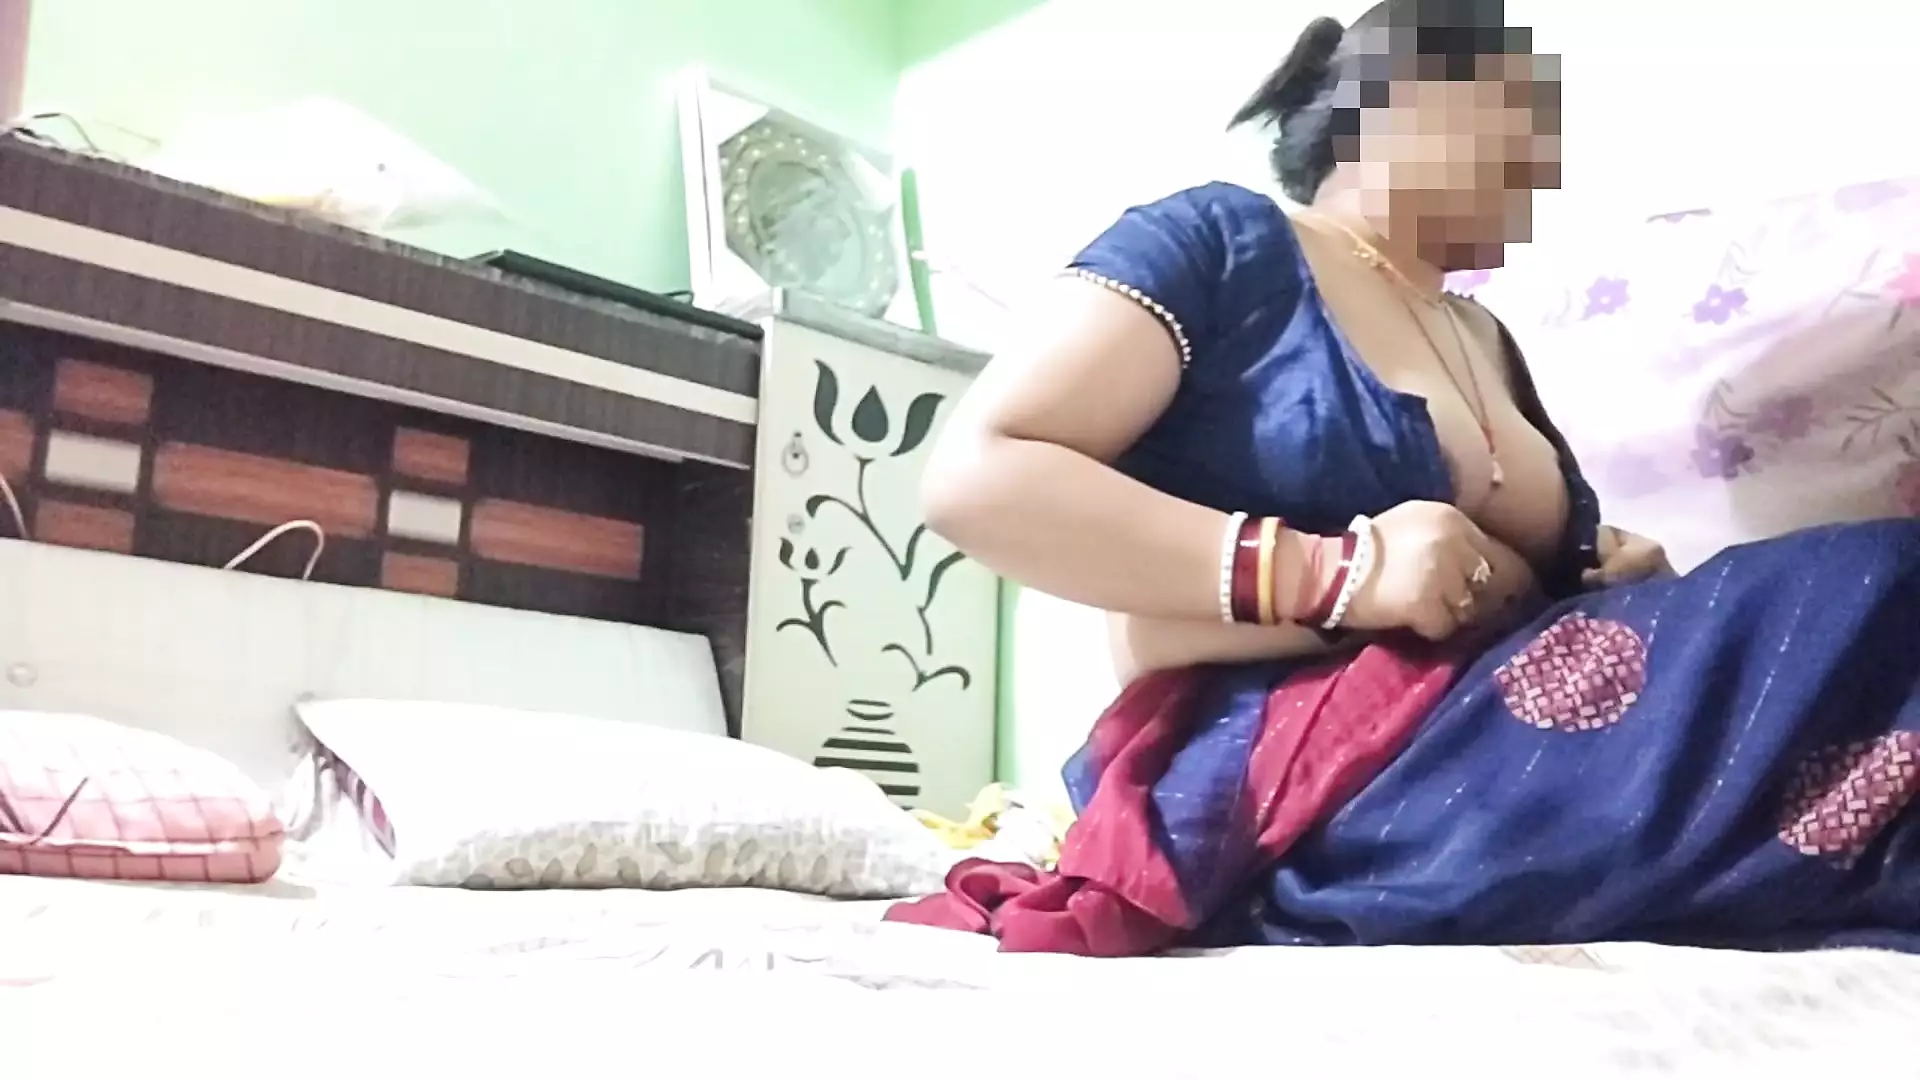 First time sex with girlfriend in hotel room hindi,phli baar girlfriend ke sath